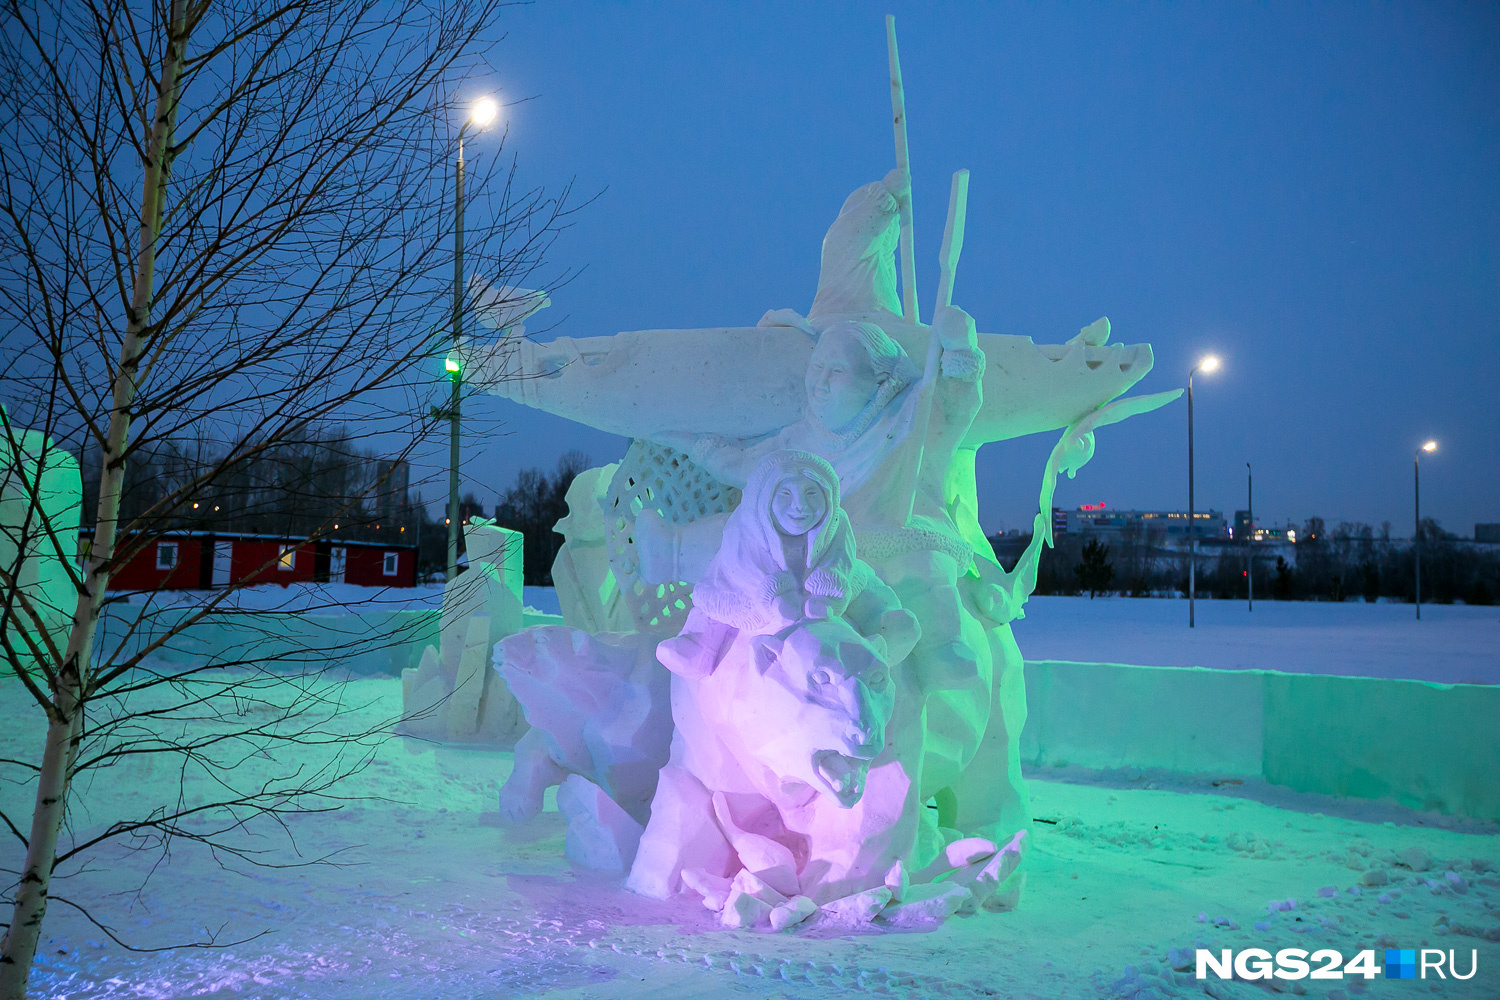 Скульптура заняла первое место в номинации «Снег»